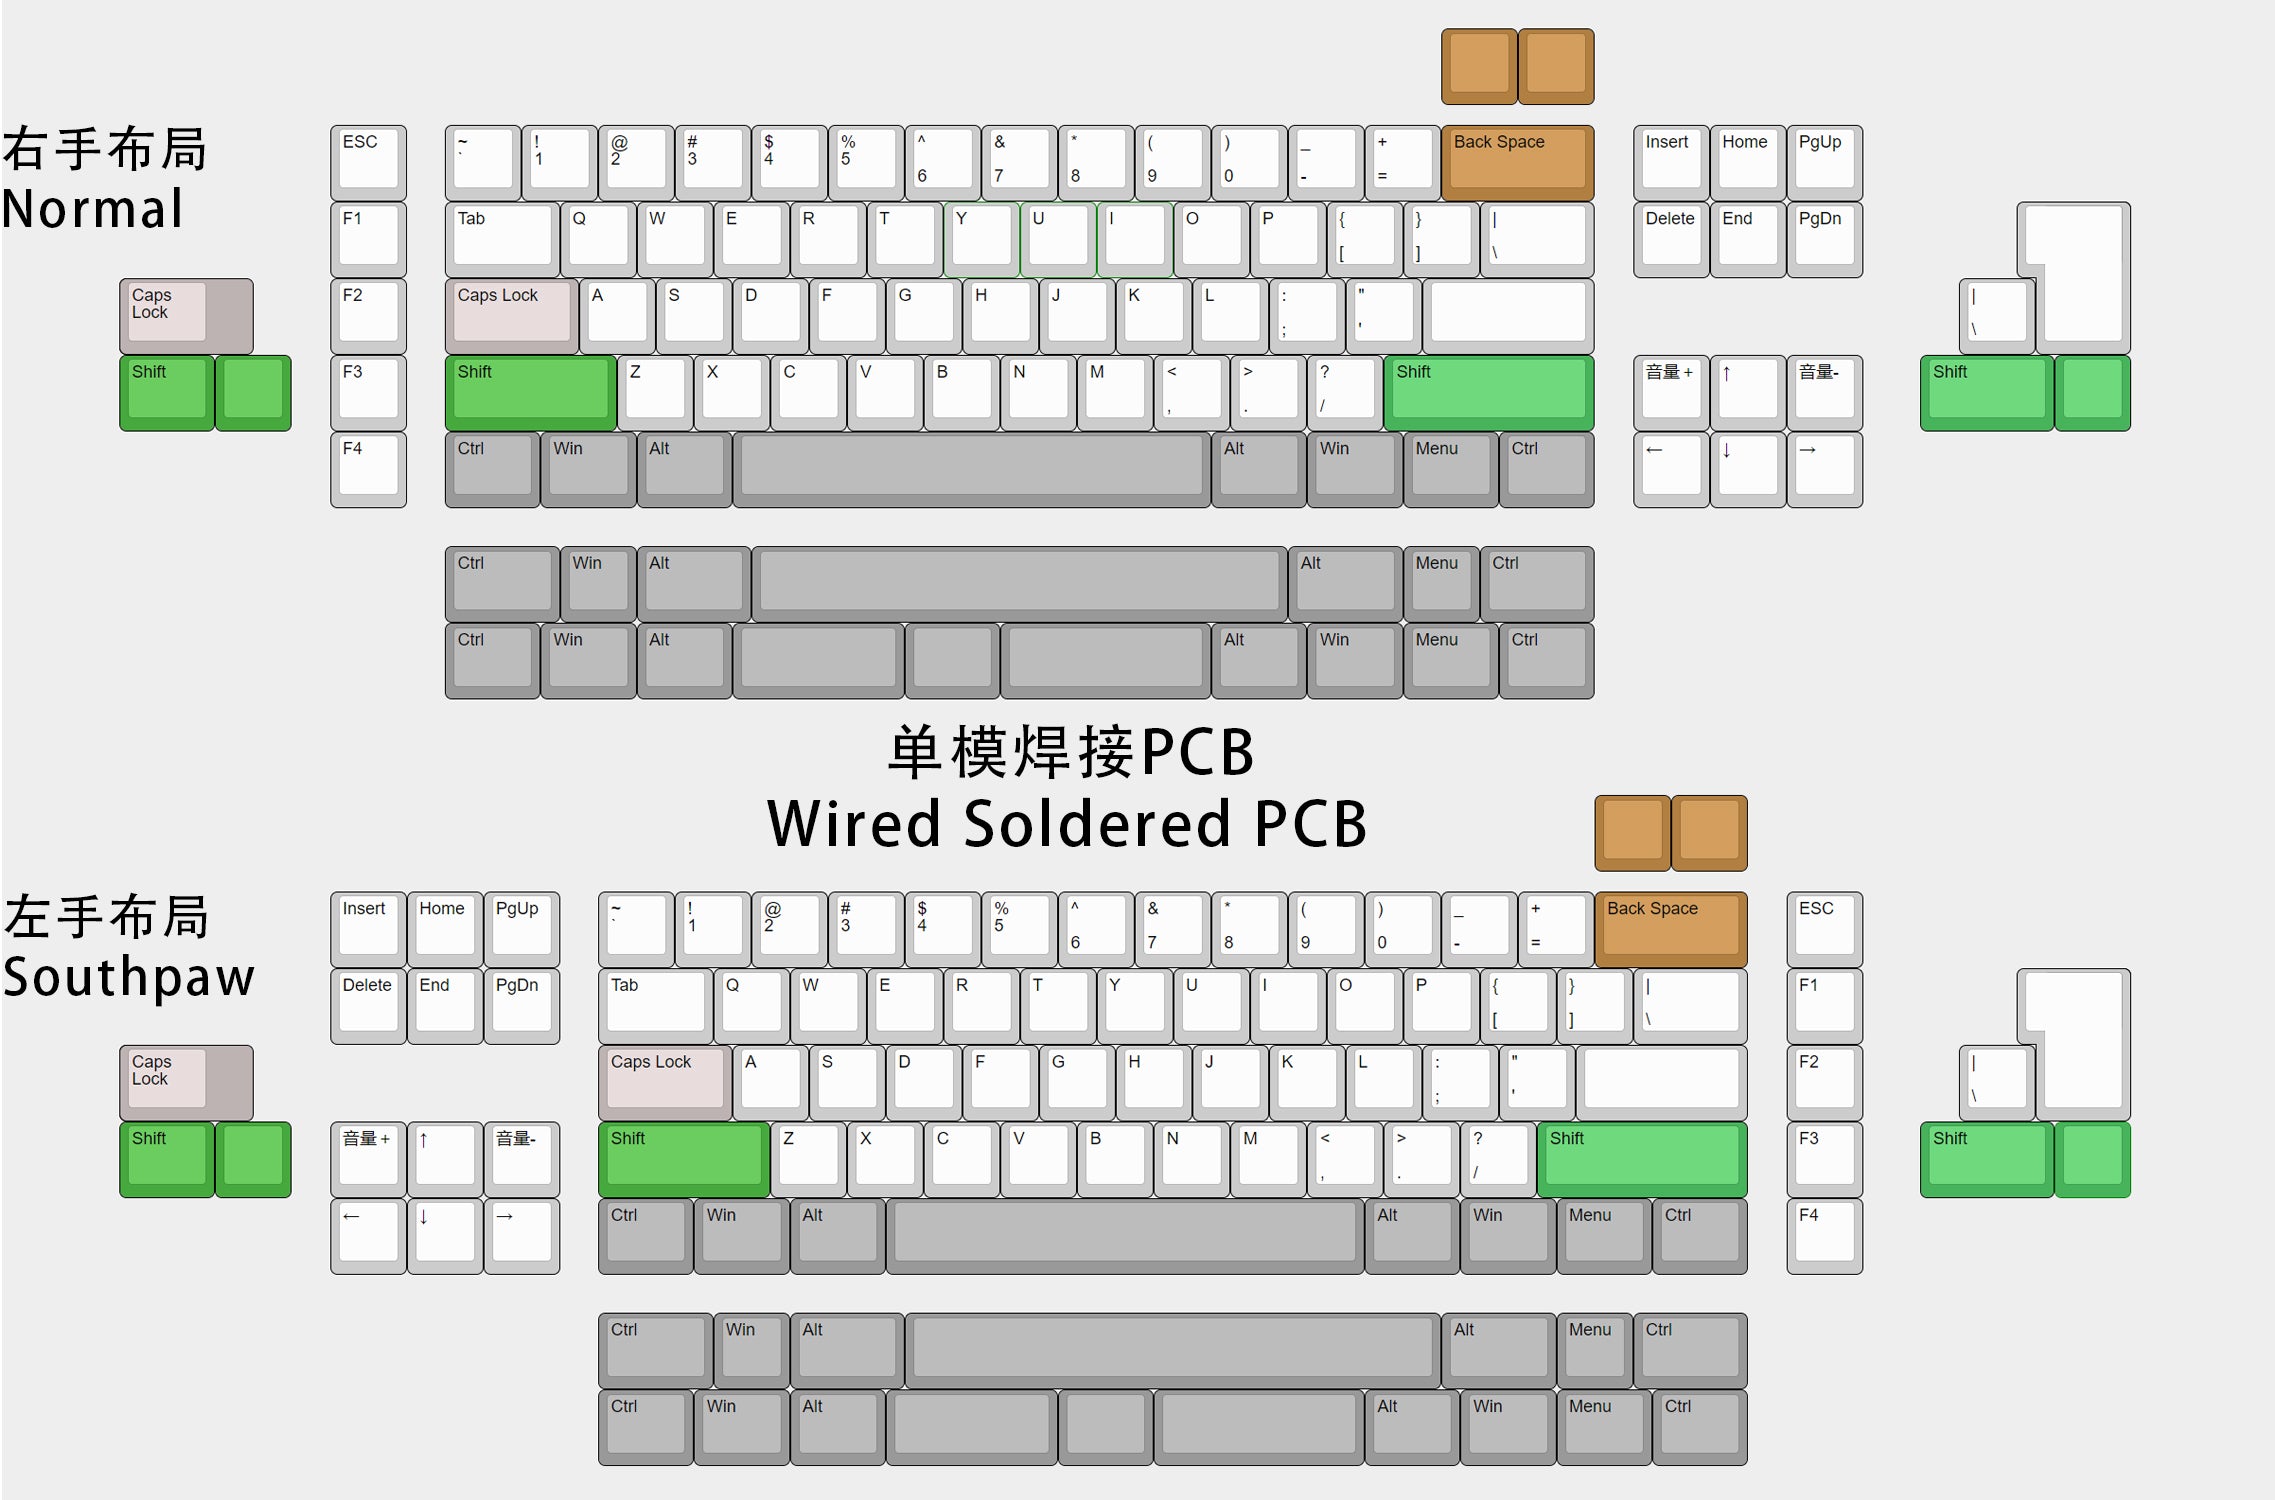 DR-70F Keyboard Kit - Group-Buy